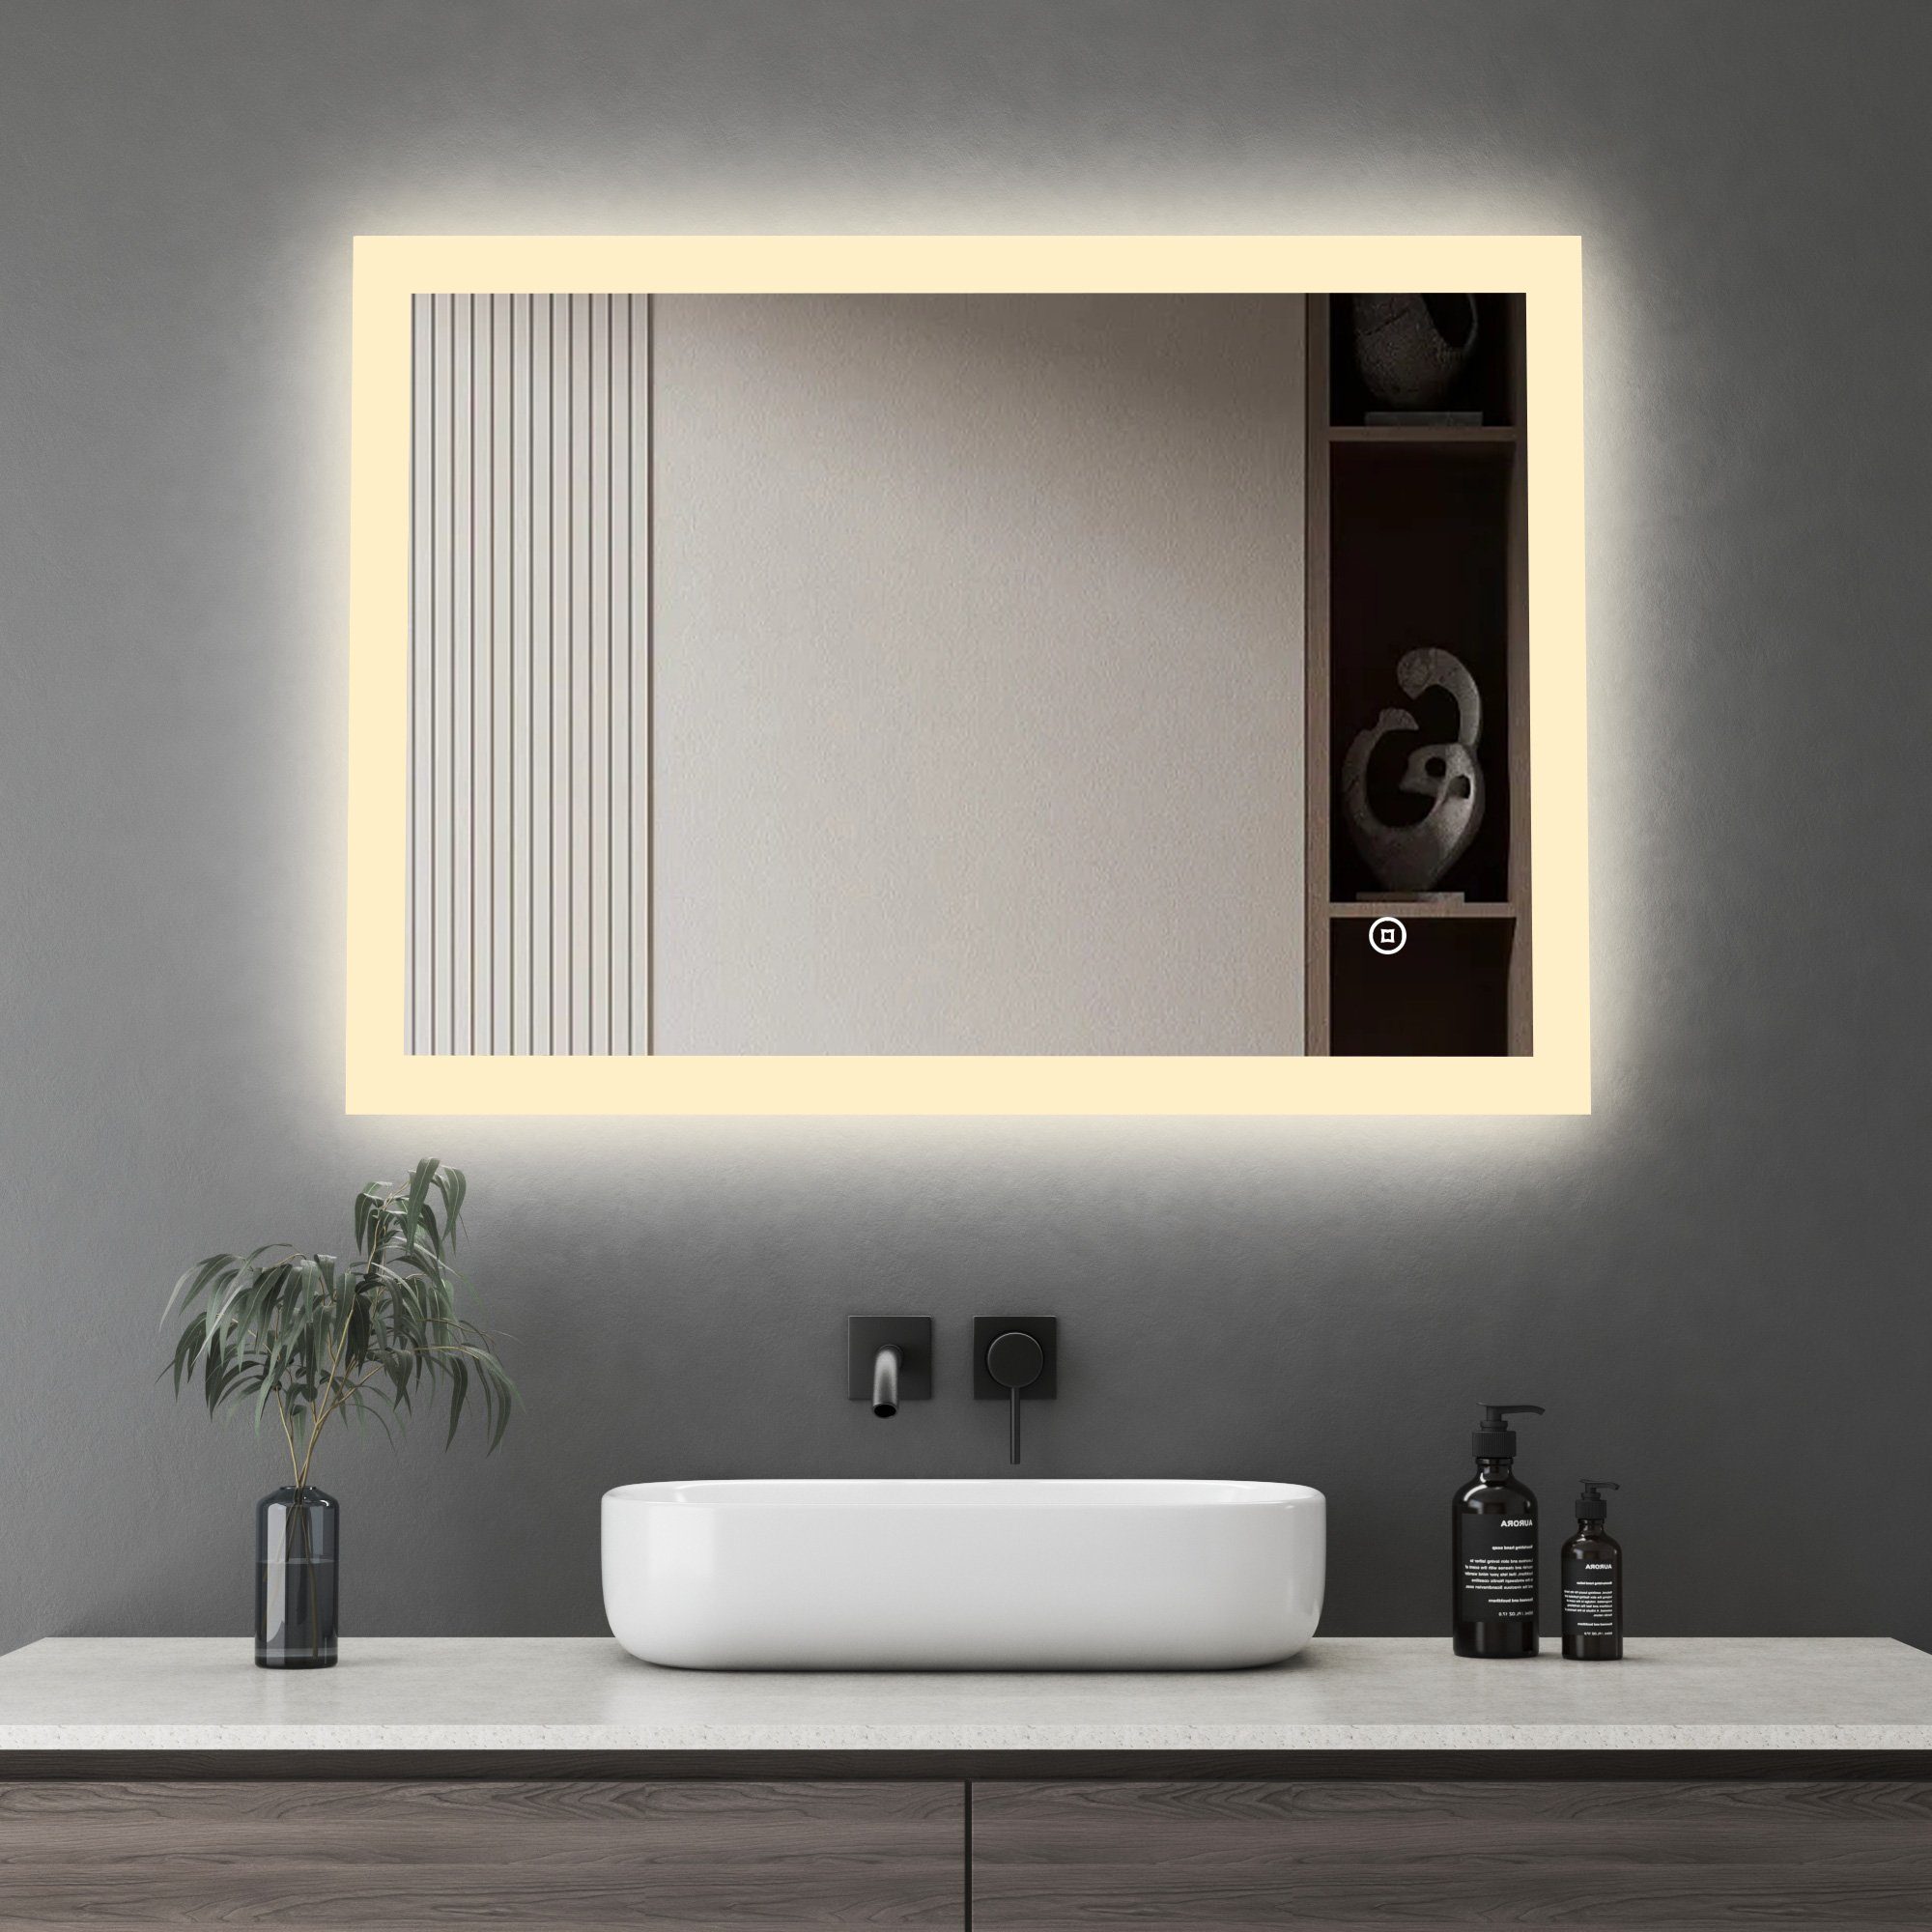 WDWRITTI Badspiegel Spiegel Bad mit beleuchtung 80x60 Led Touch Wandschalter mit ohne Uhr (Wandspiegel Speicherfunktion, Warmweiß, Kaltweiß, Neutral), Helligkeit Dimmbar